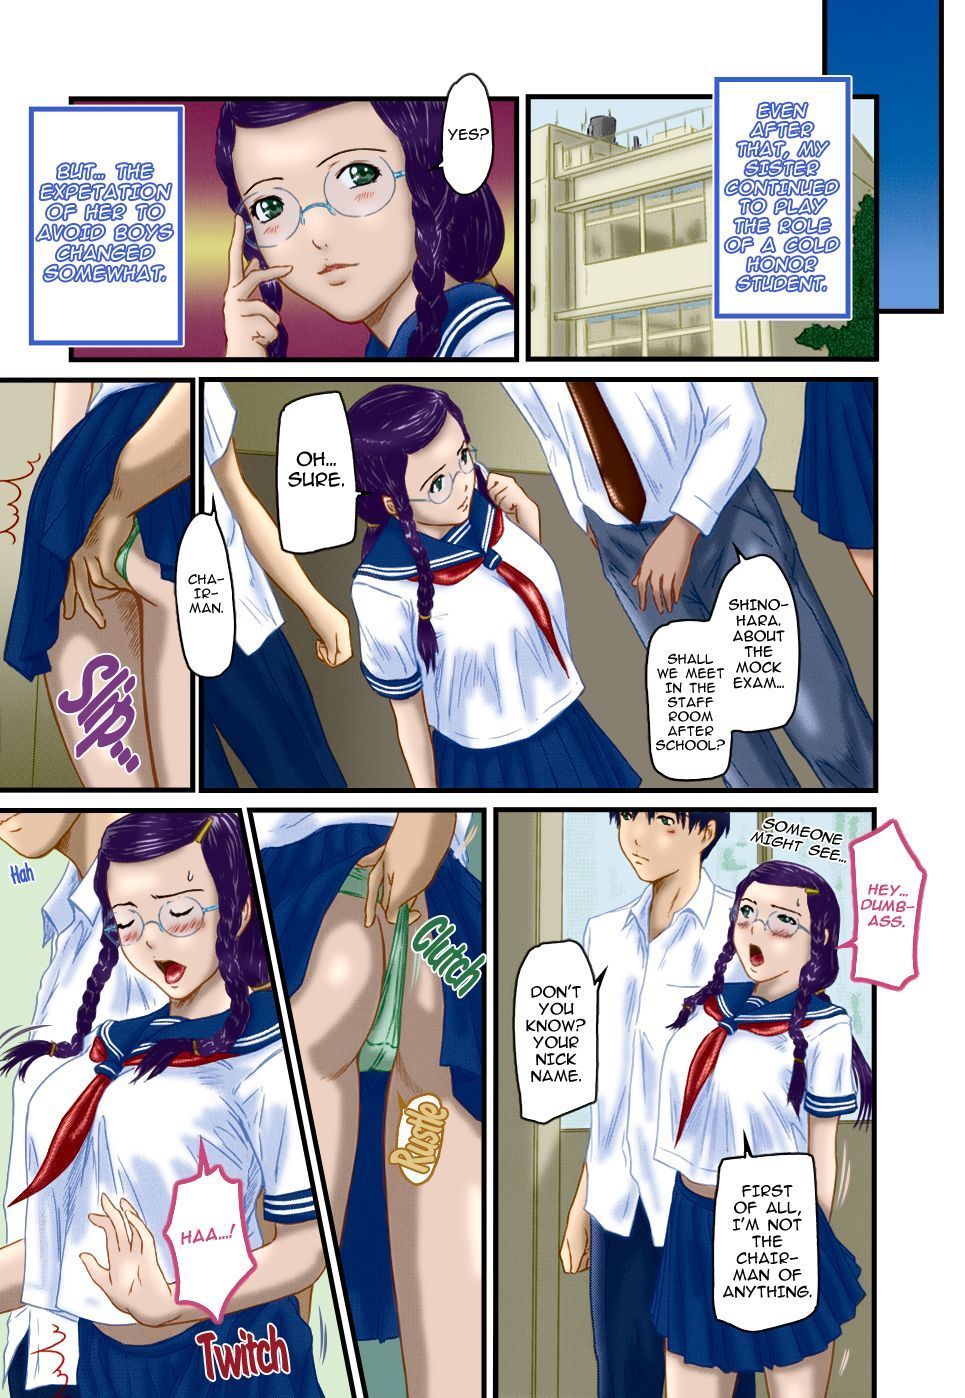 Kisaragi Gunma Sister Syndrome (Love Selection) Colorized Decensored